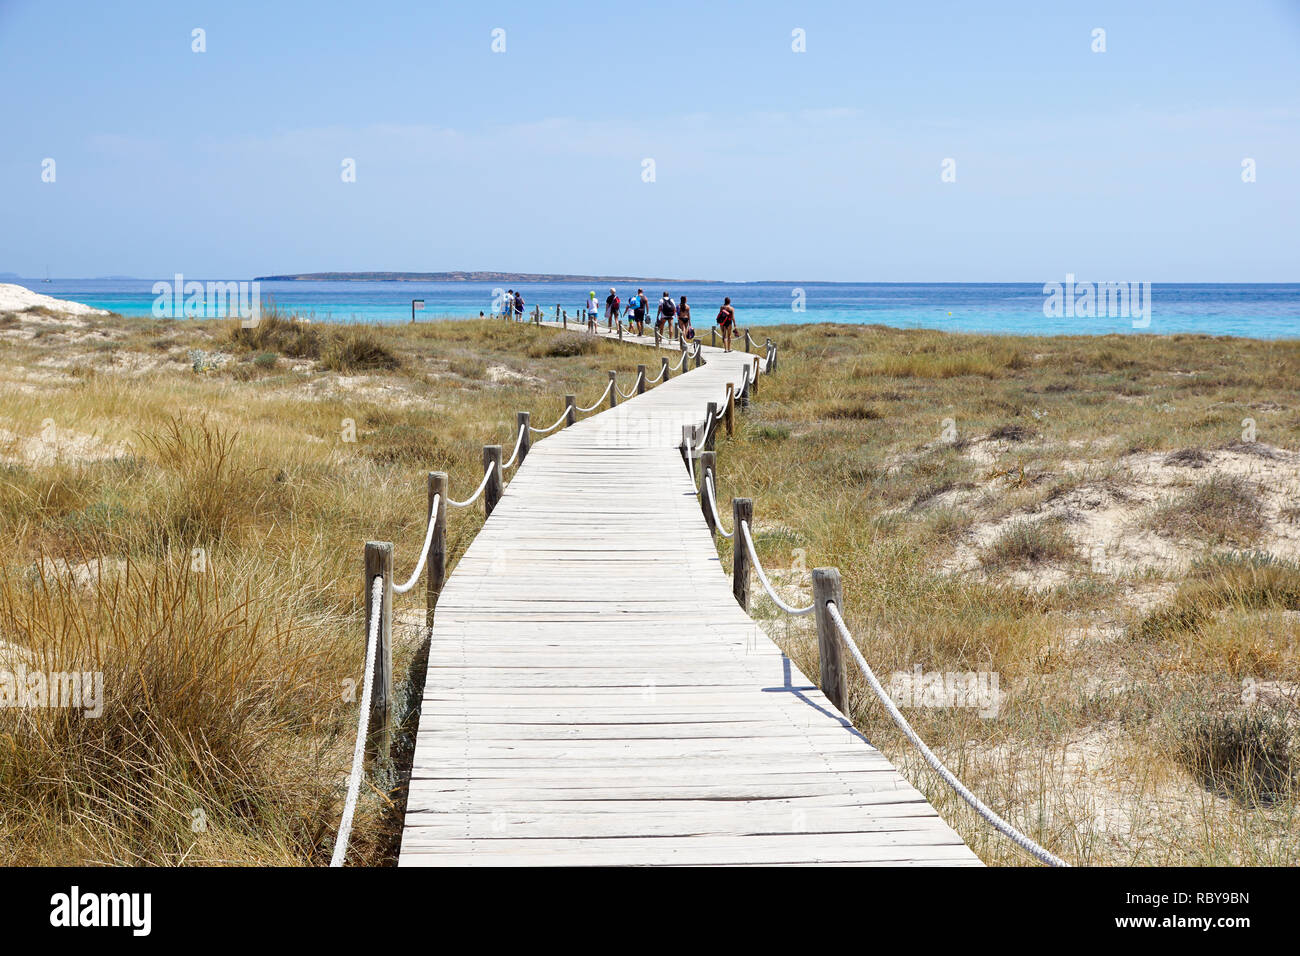 Passerella in legno e acqua turchese presso la Spiaggia di Illetes a Formentera. Isole Baleari. Spagna Foto Stock